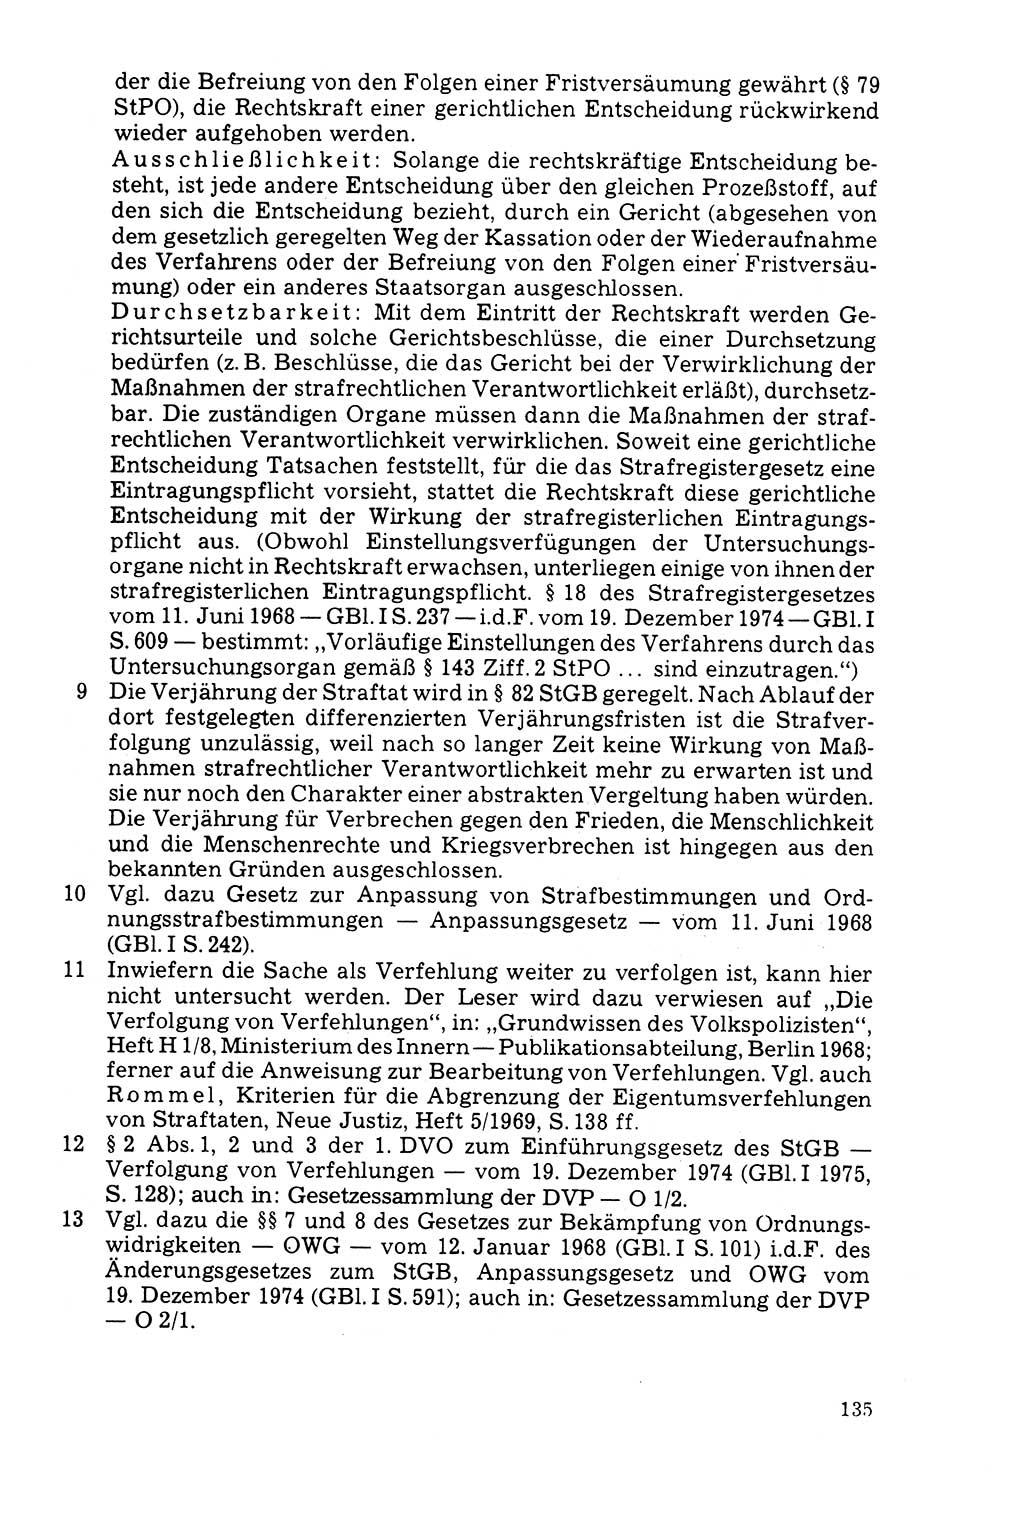 Der Abschluß des Ermittlungsverfahrens [Deutsche Demokratische Republik (DDR)] 1978, Seite 135 (Abschl. EV DDR 1978, S. 135)